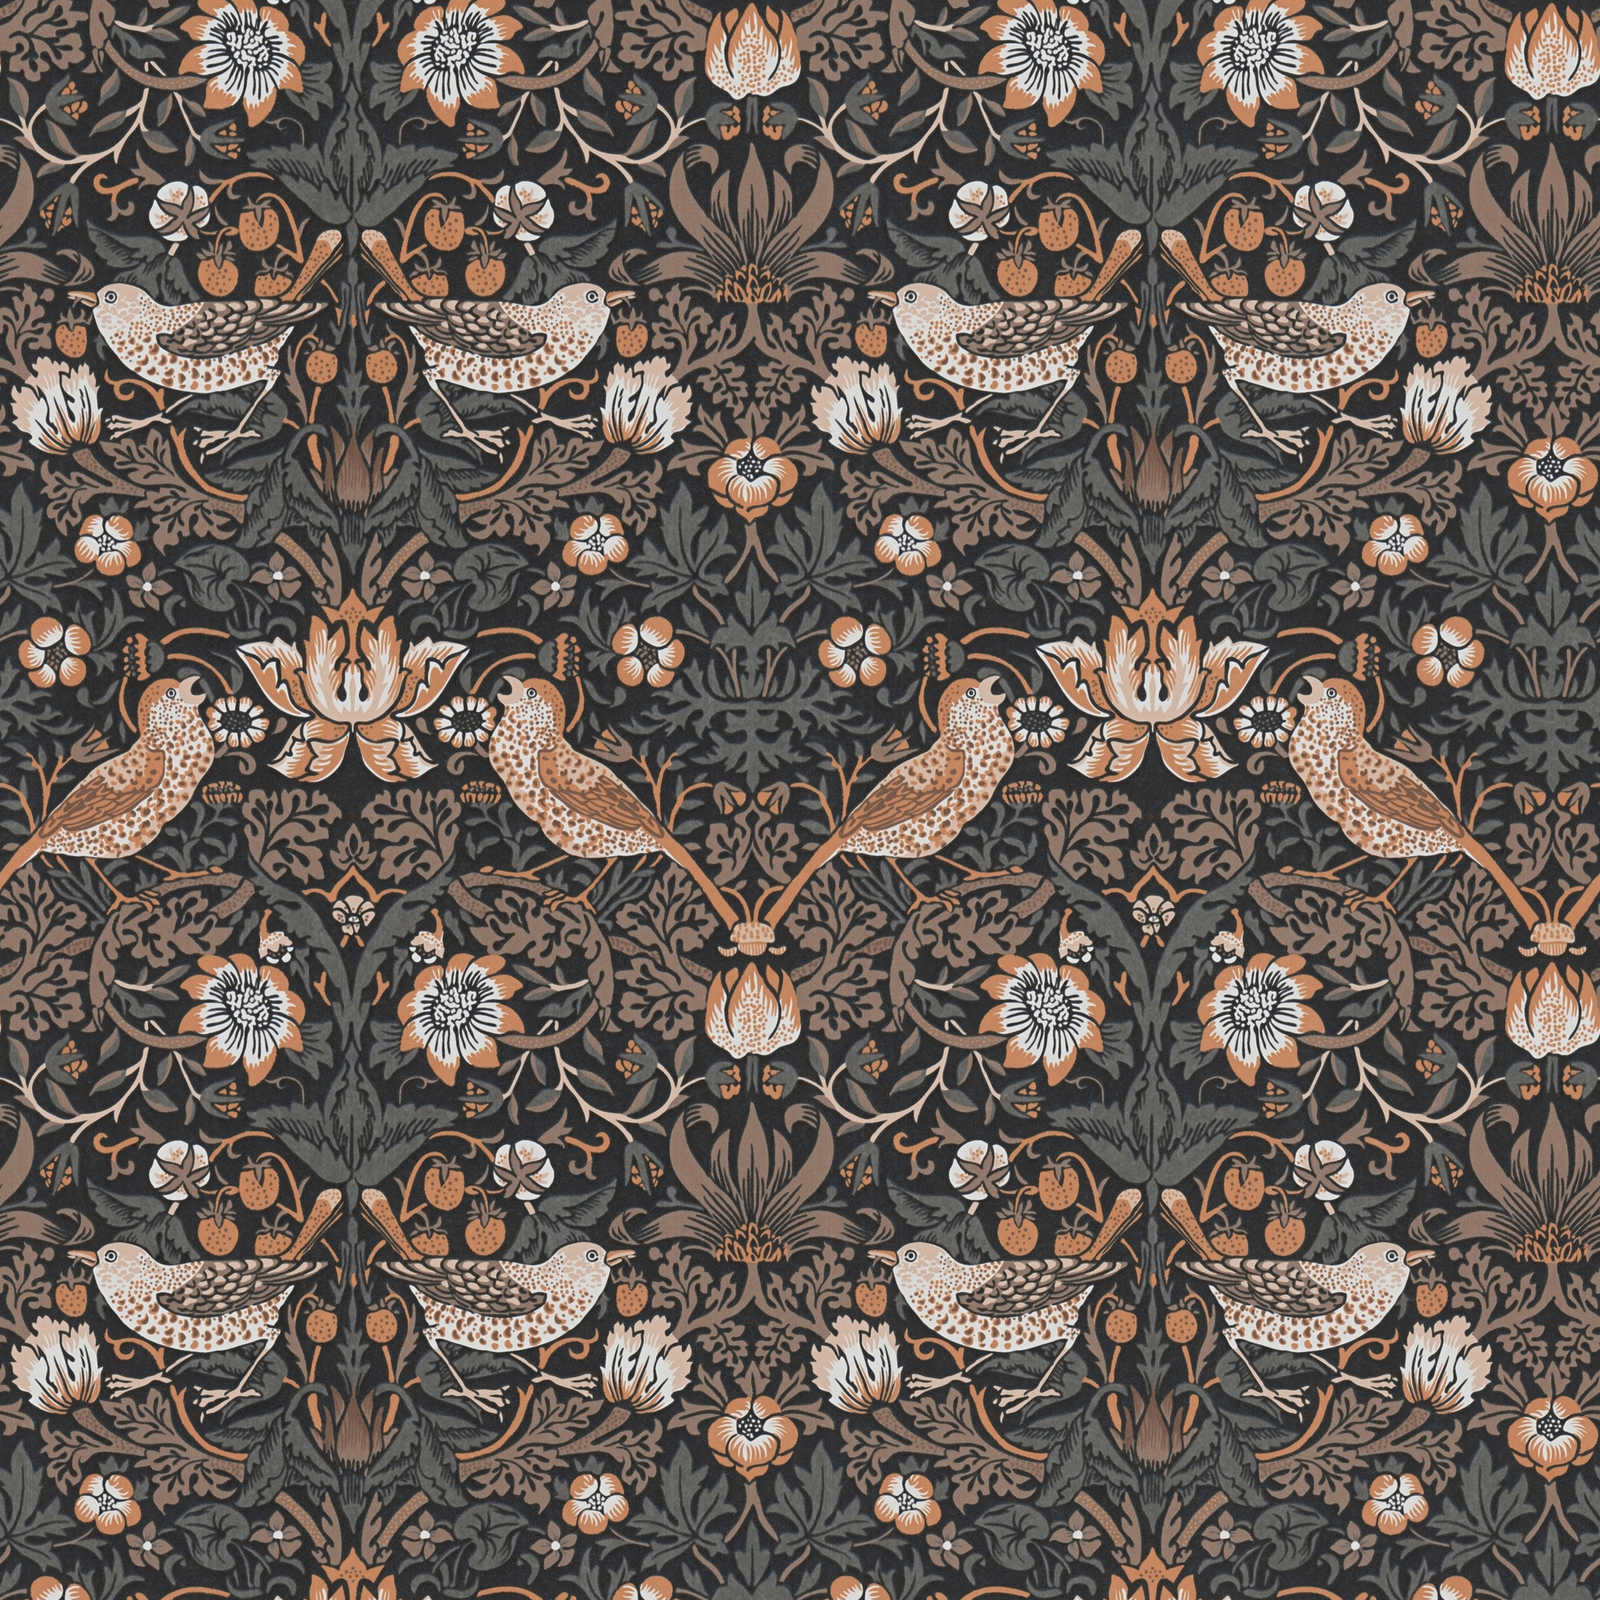 Florale Tapete mit Vögel in knalligen Farben – orange, Schwarz, Weiß
